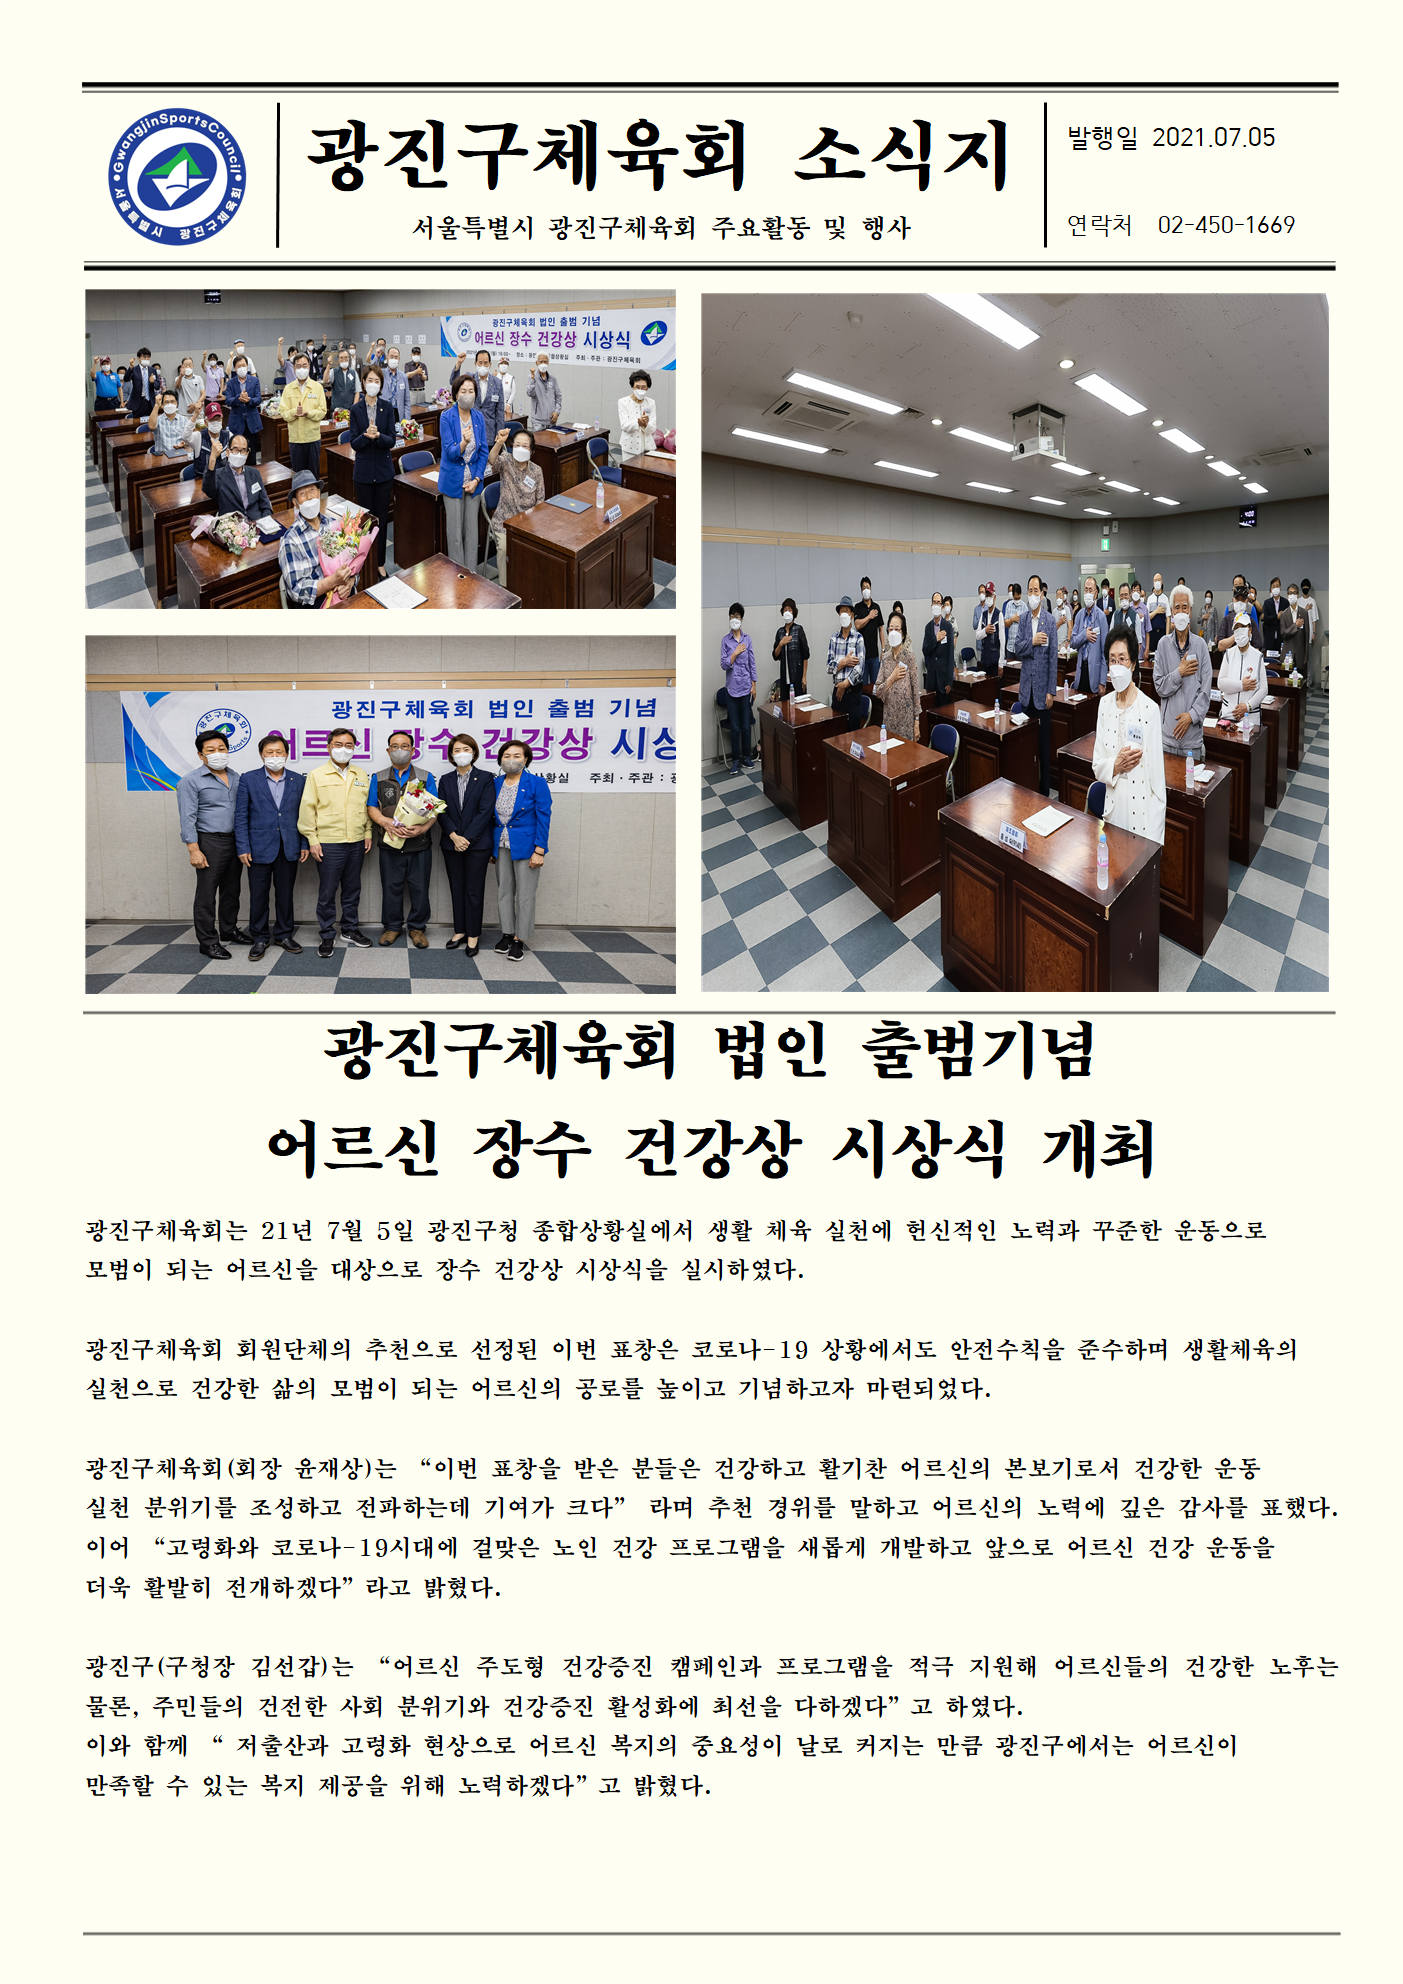 21.07.05 광진구체육회 법인 출범기념 어르신 장수 건강상 시상식개최.png